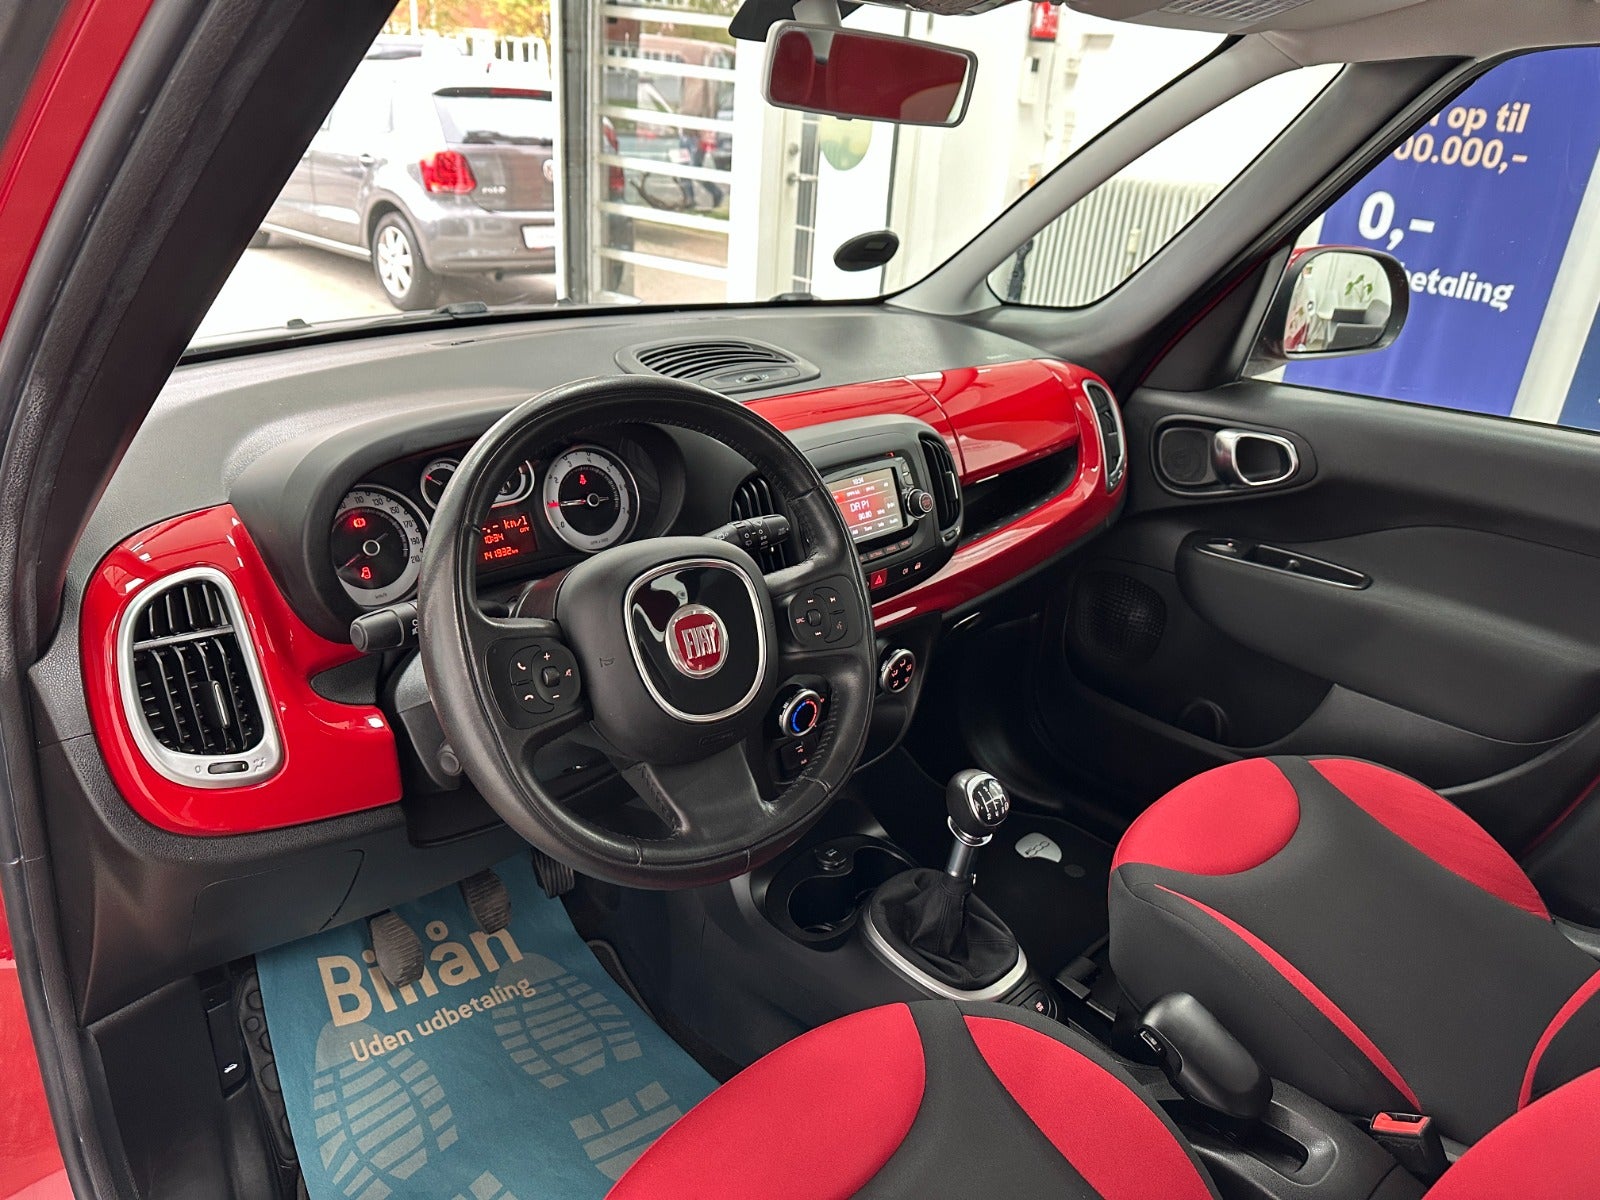 Fiat 500L 2013